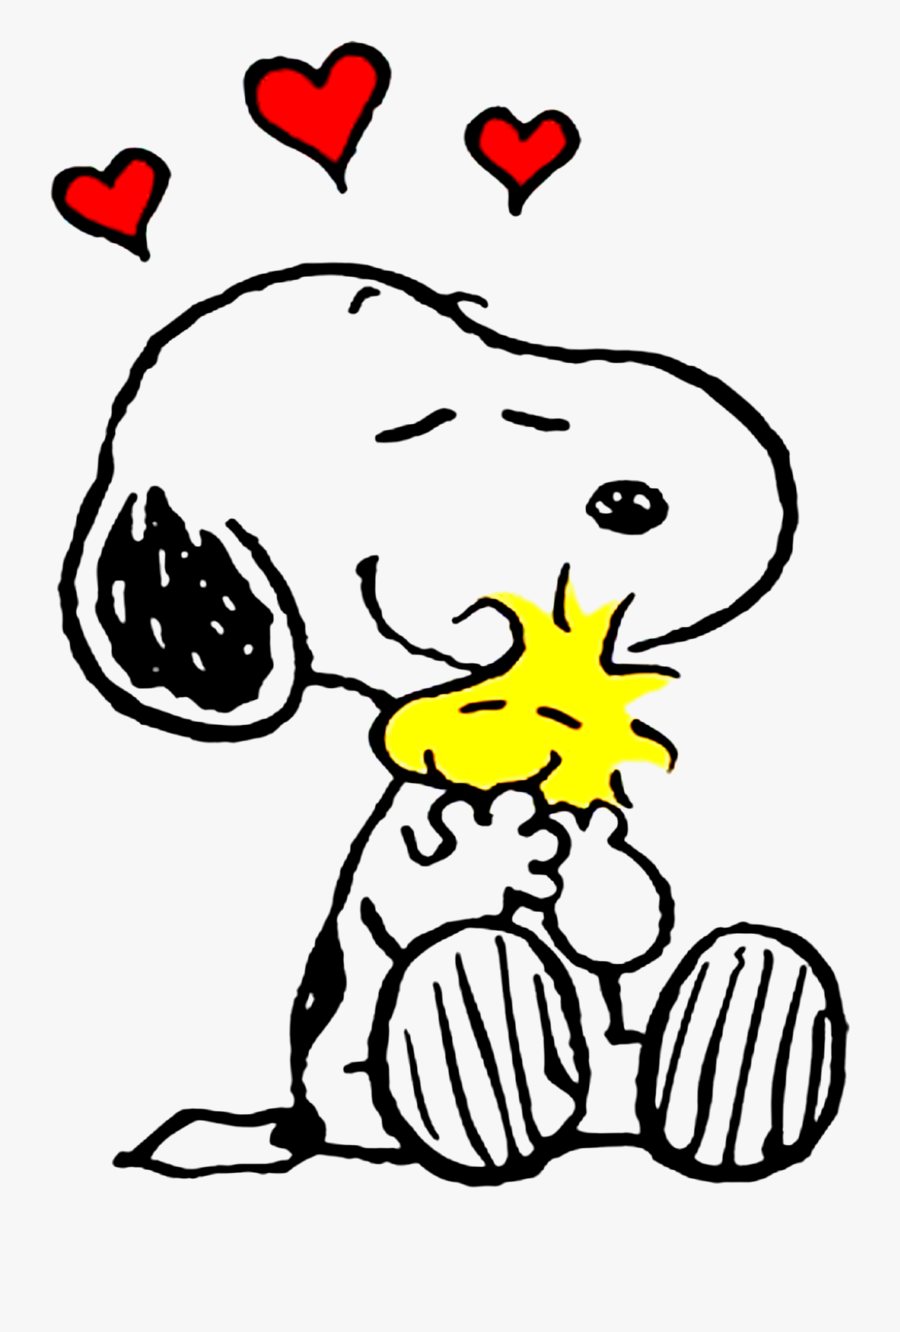 Snoopy Charlie Brown Lucy Van Pelt Rerun Van Pelt Linus - Snoopy And Woodstock Drawings, Transparent Clipart